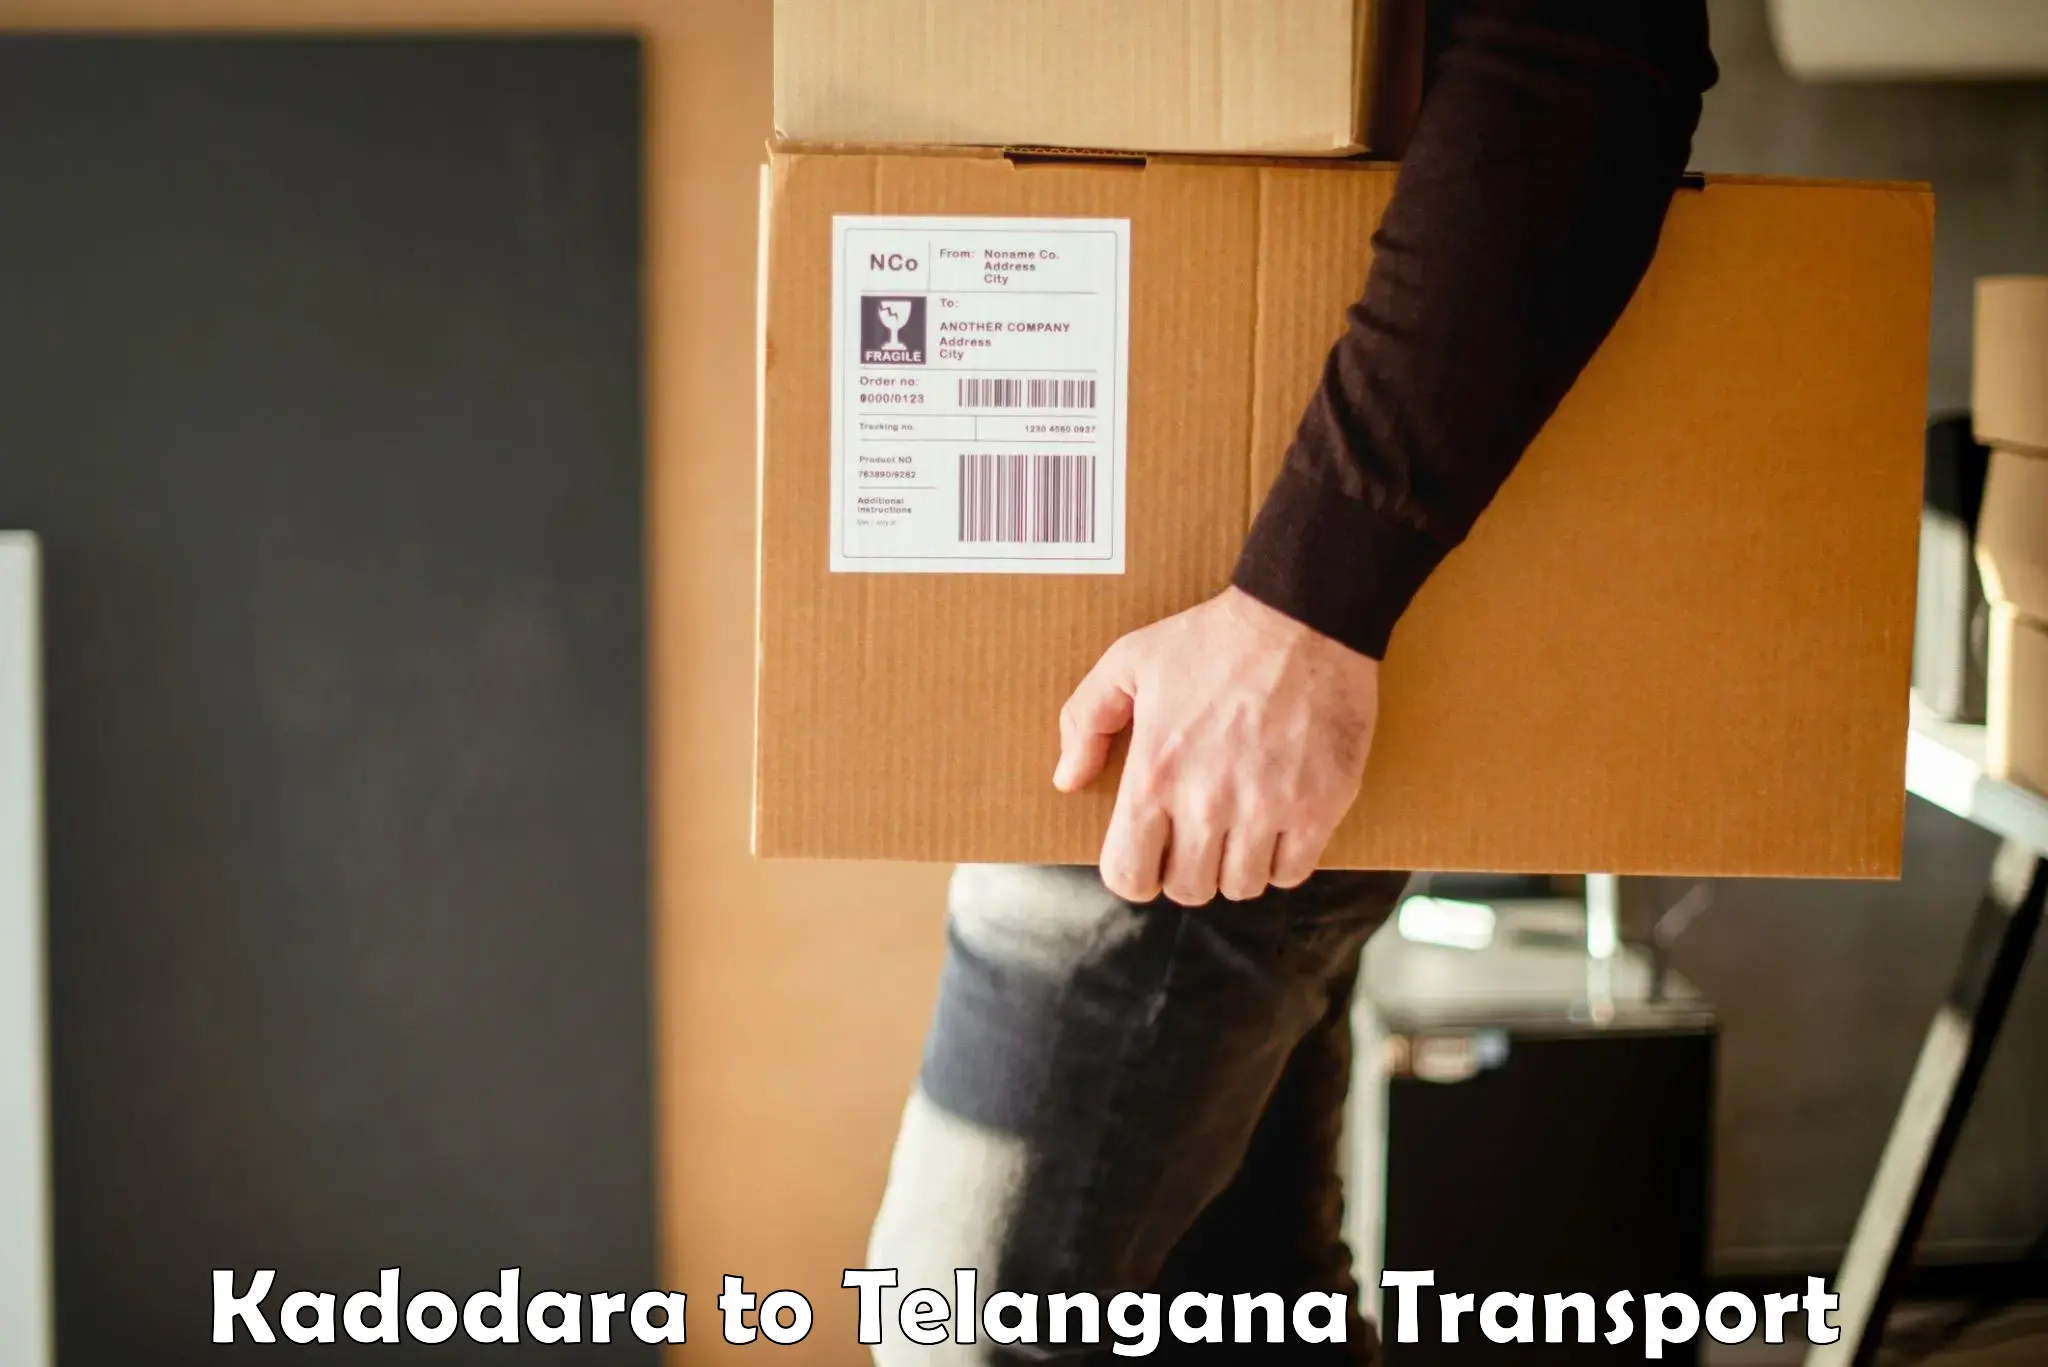 Shipping partner Kadodara to Nirmal